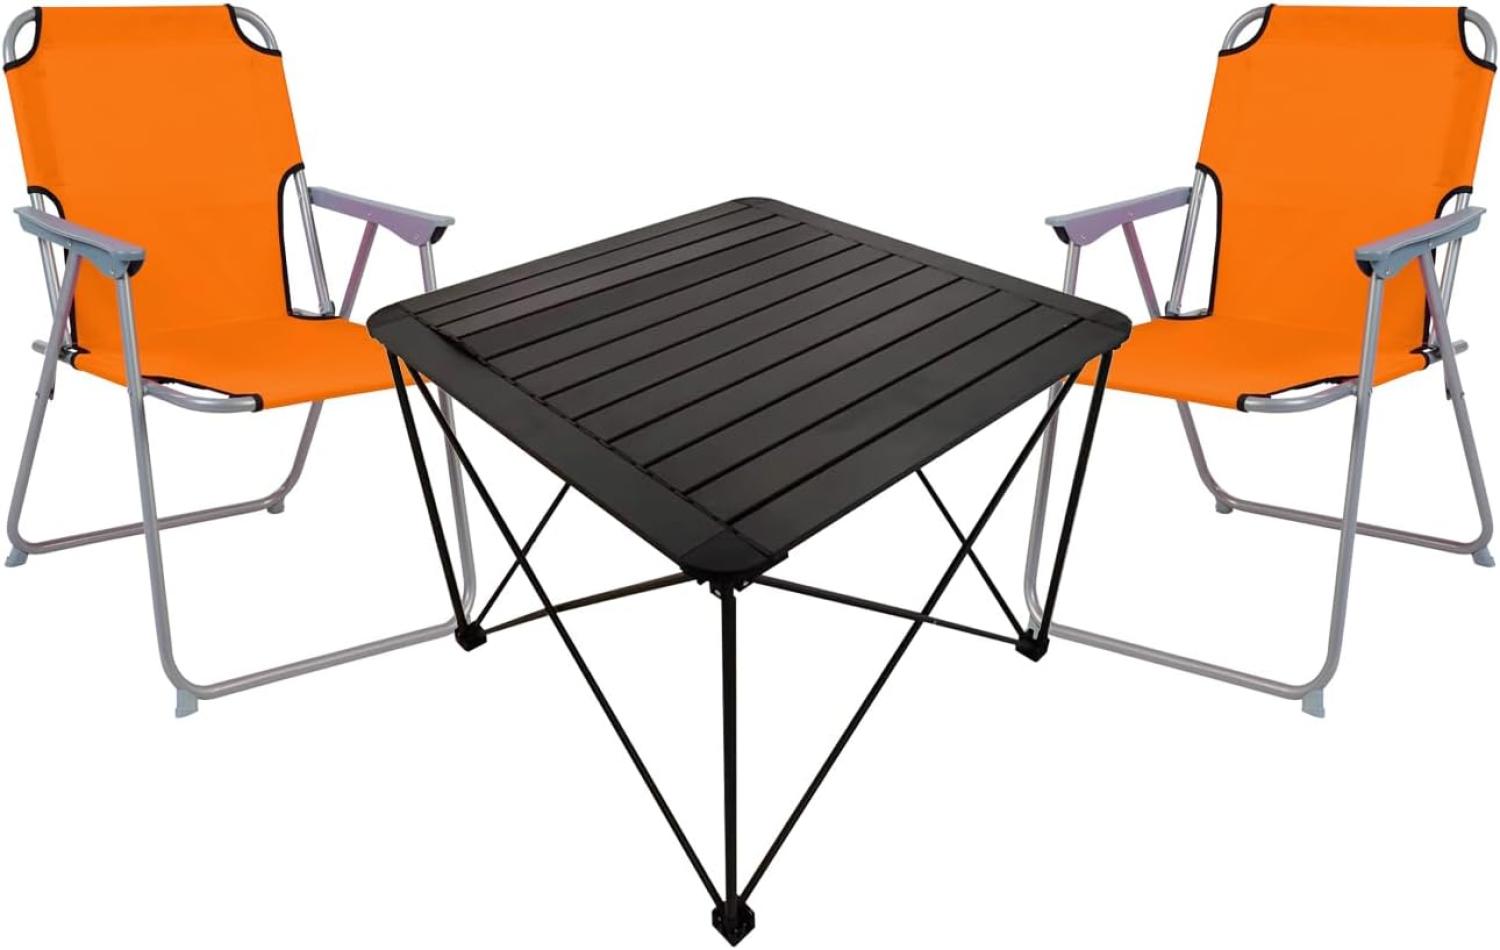 3teiliges Campingmöbel Set Campingtisch Campingstuhl L70xB70xH56cm Bild 1